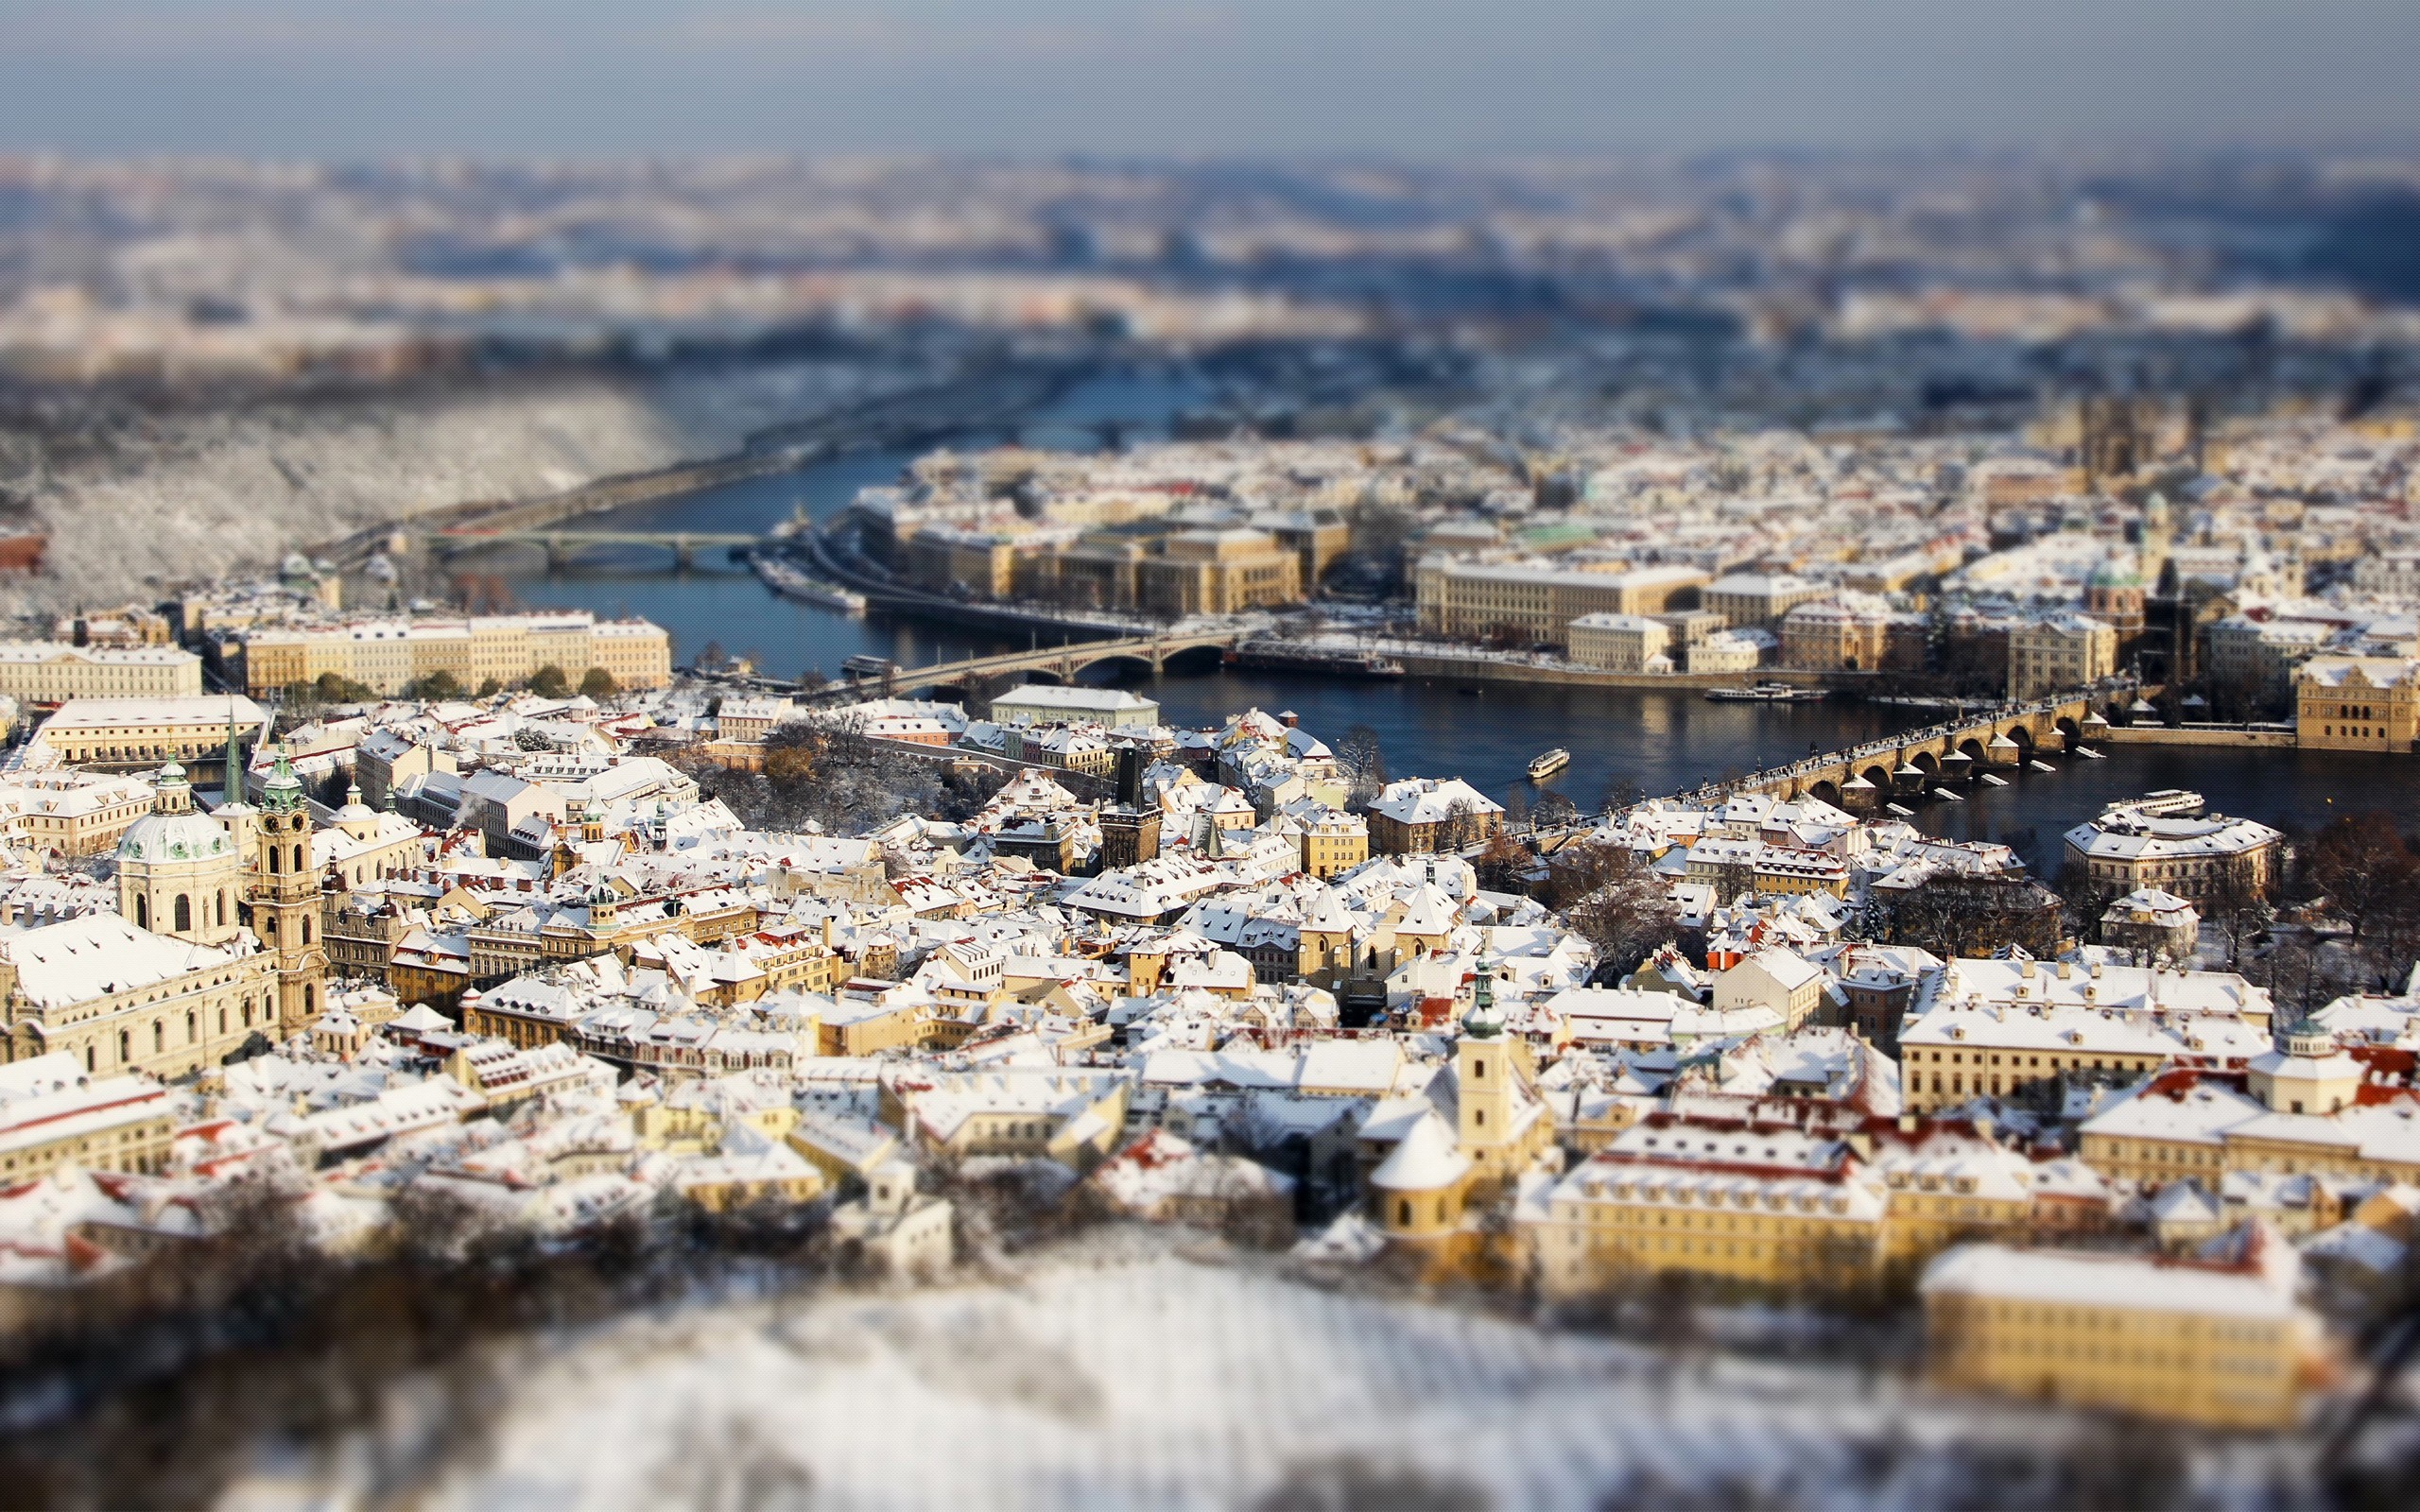 General 2560x1600 tilt shift Prague cityscape Czech Republic digital art city snow winter rooftops